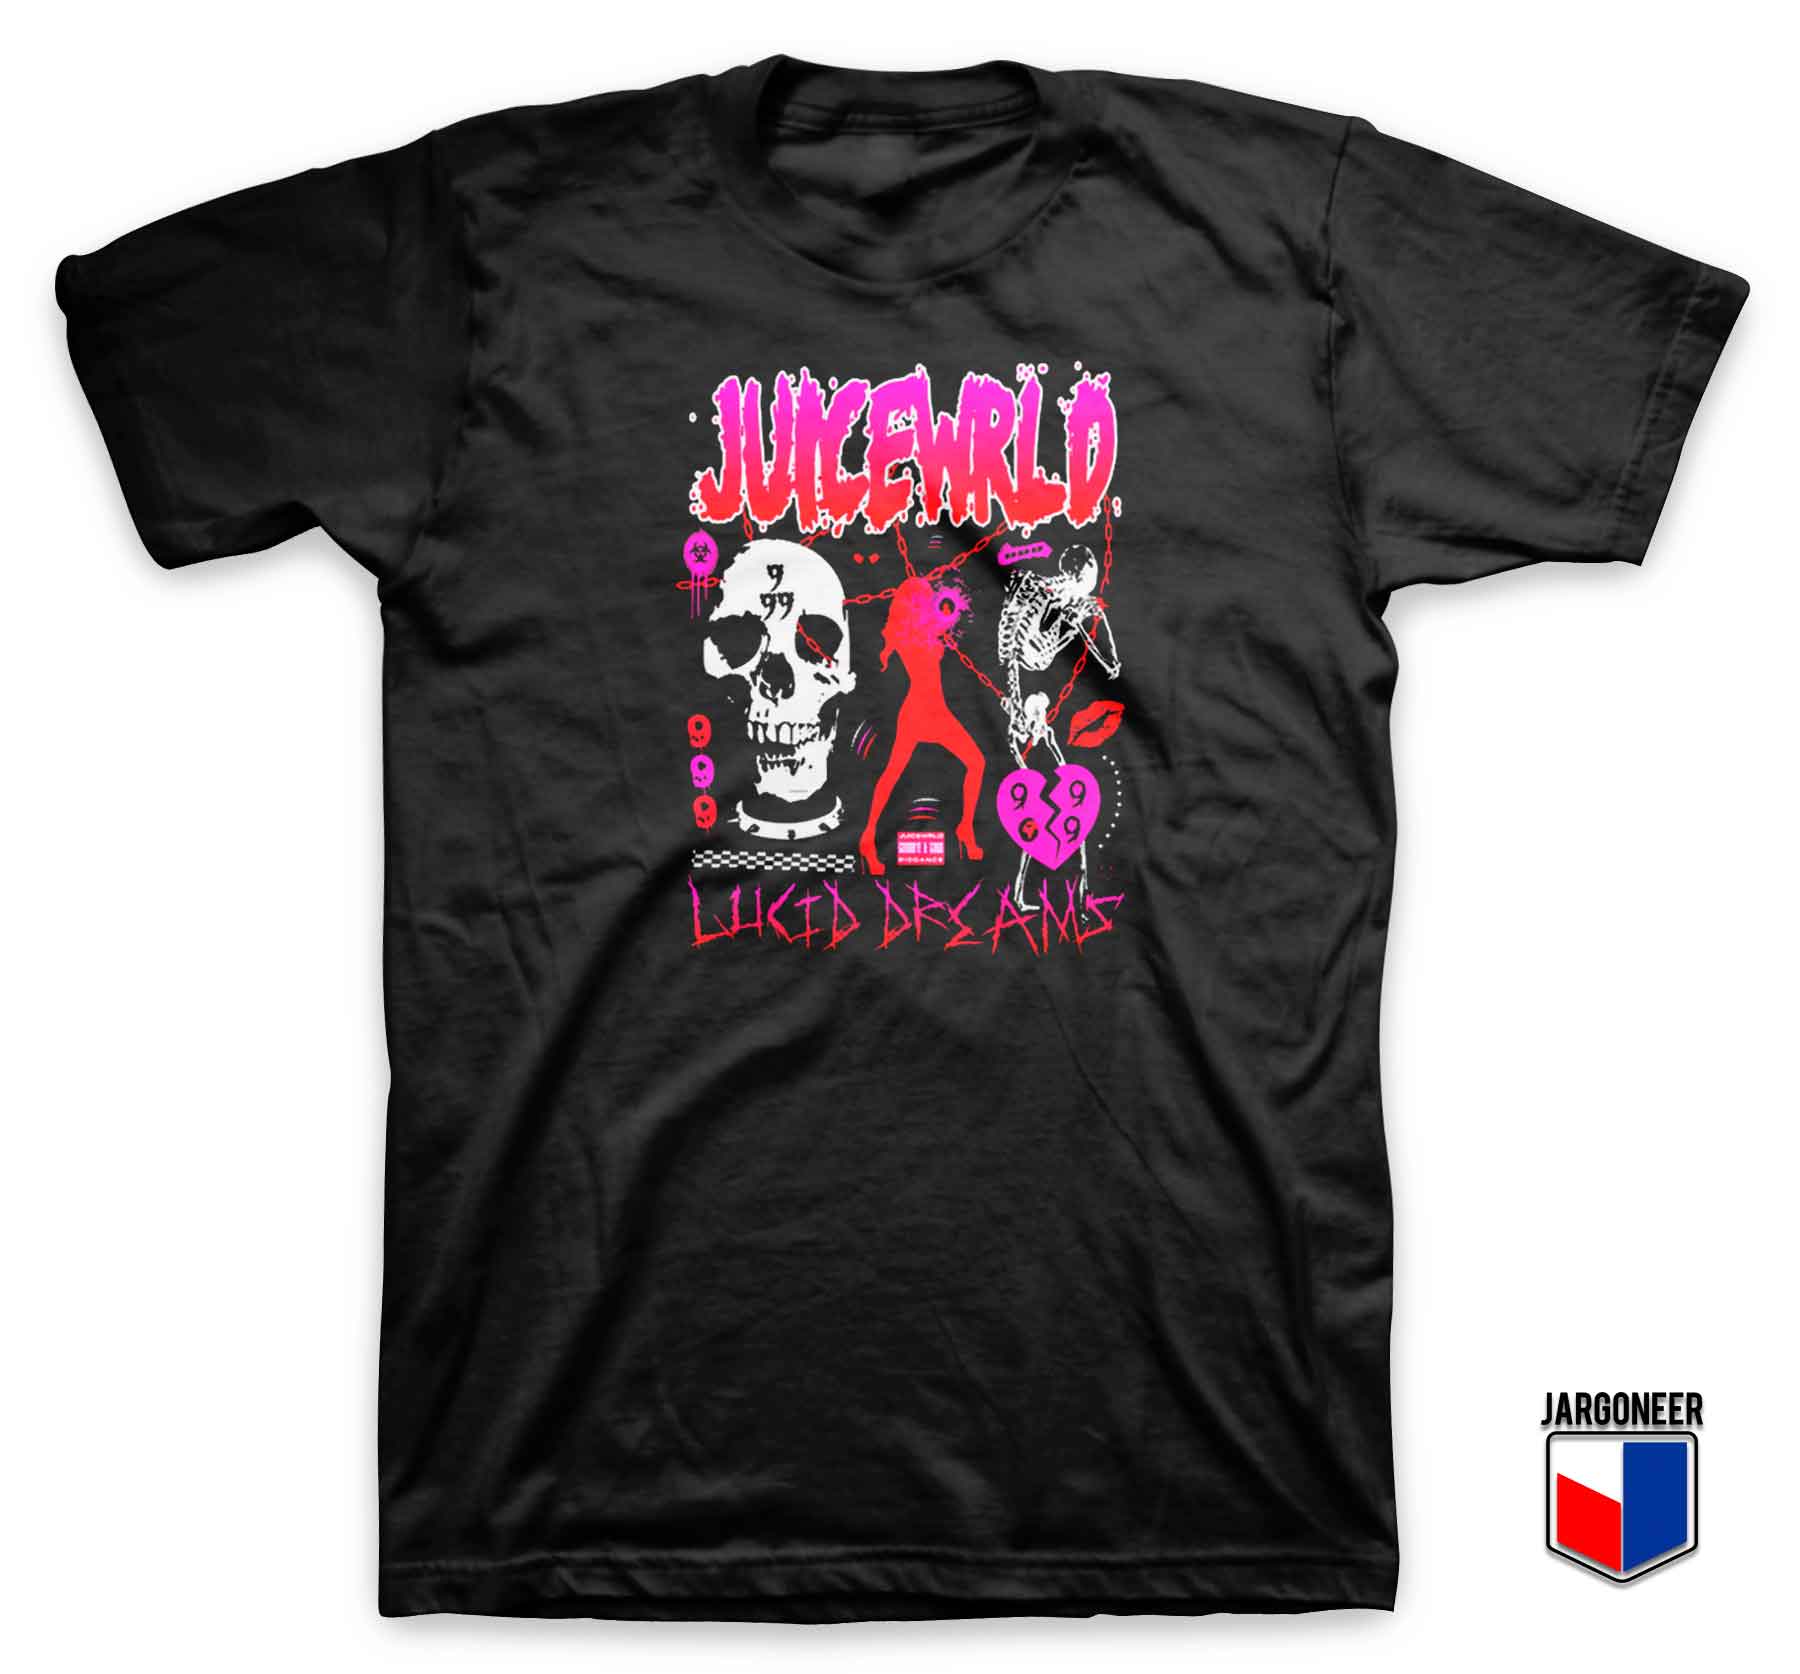 Juice Wrld Lucid Dreams T Shirt - Shop Unique Graphic Cool Shirt Designs